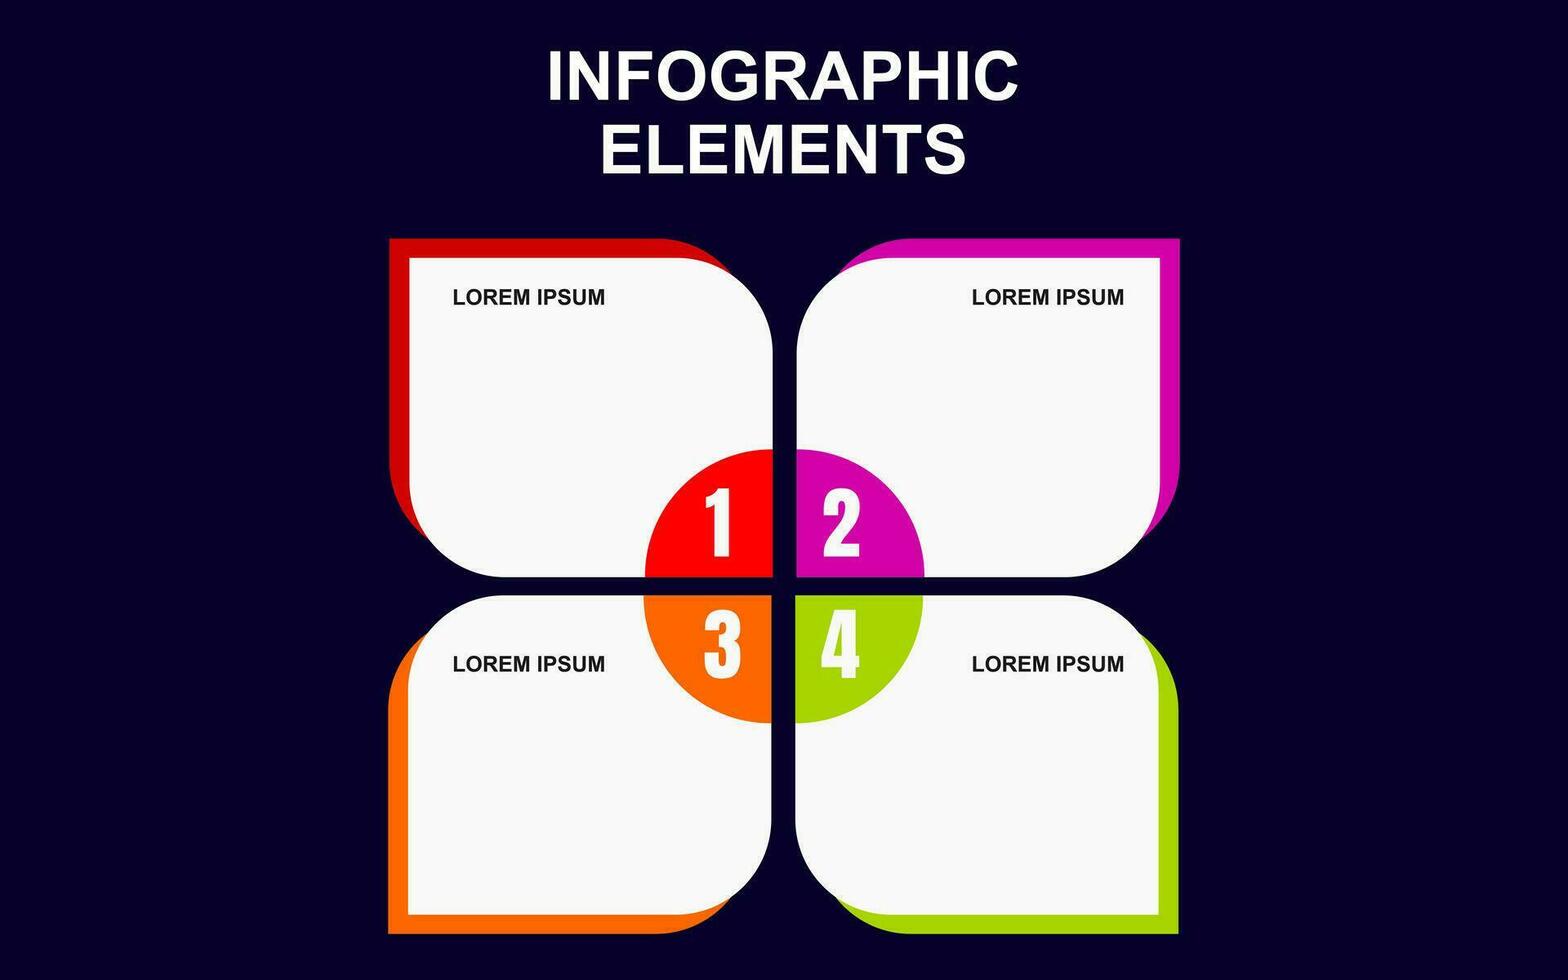 Infografica elemento design con 4 colorato passaggi per presentazione e attività commerciale. Infografica pianificazione design per presentazioni. vettore